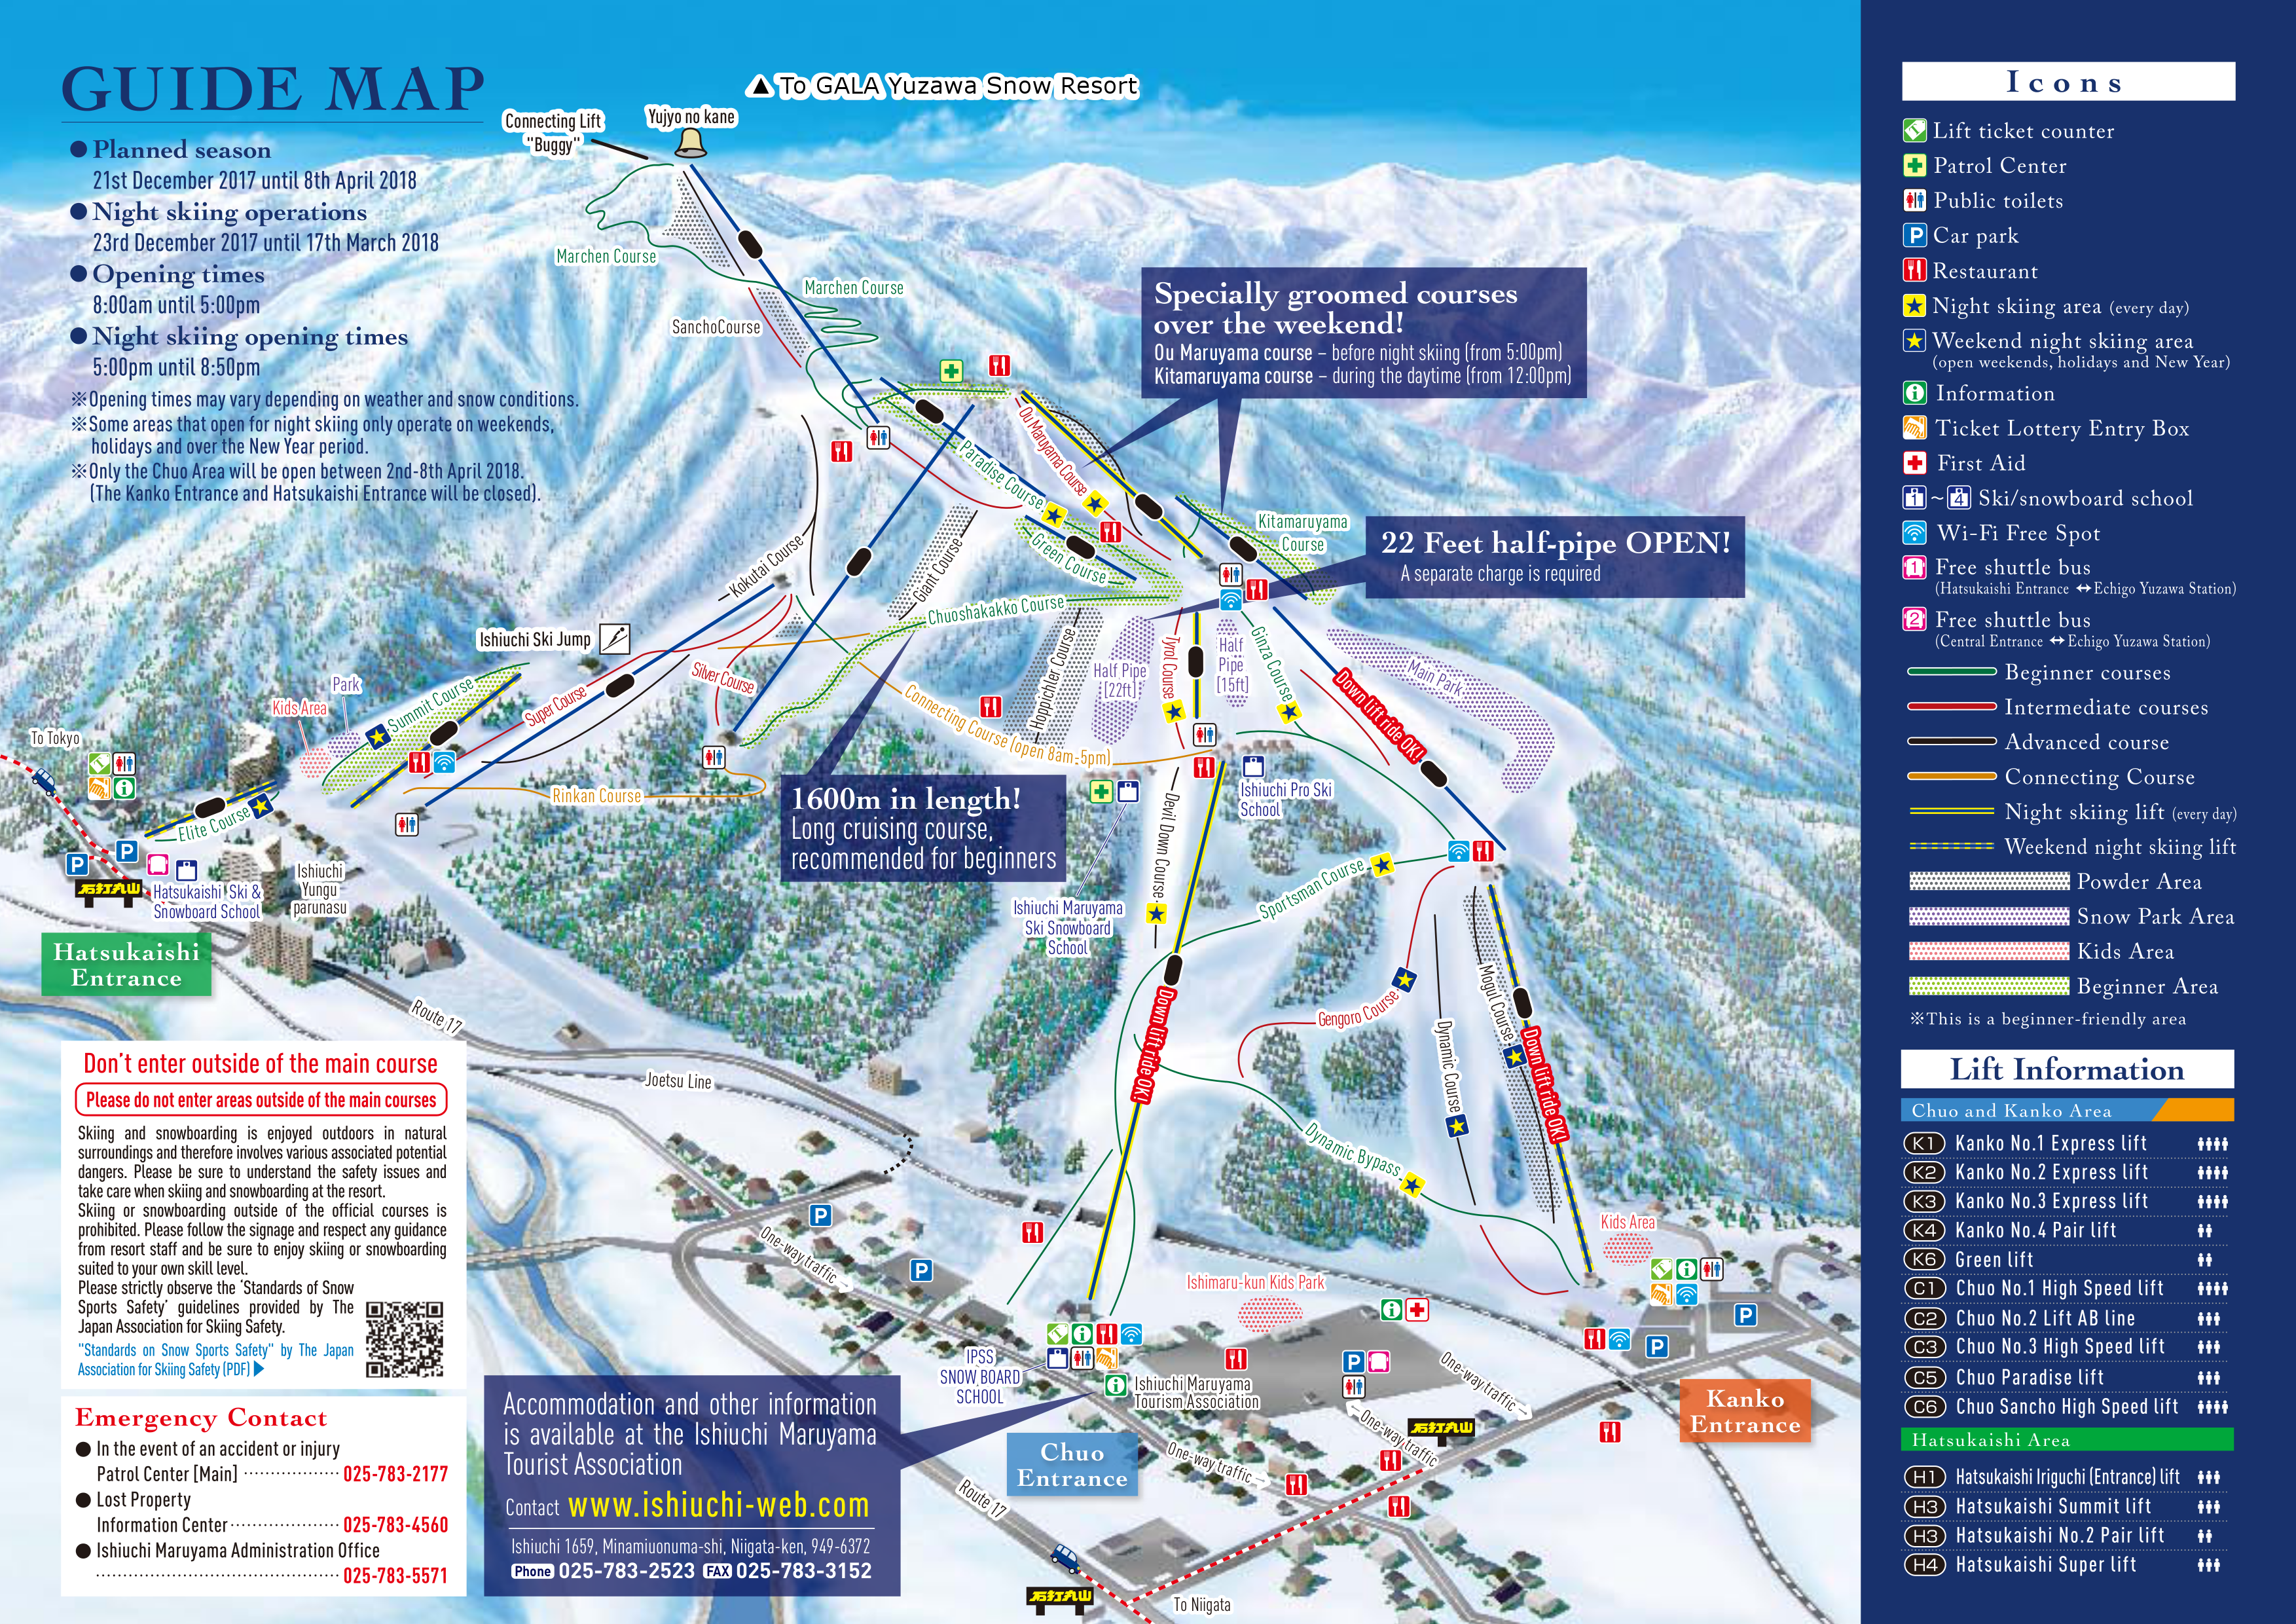 スキー 場 丸山 石打 スキー場はウィンタースポーツのためだけの場所じゃない。石打丸山スキー場の「雪山の新たな滞在体験モデル」は雪資源豊富な地方に交流人口を増やすきっかけになるか